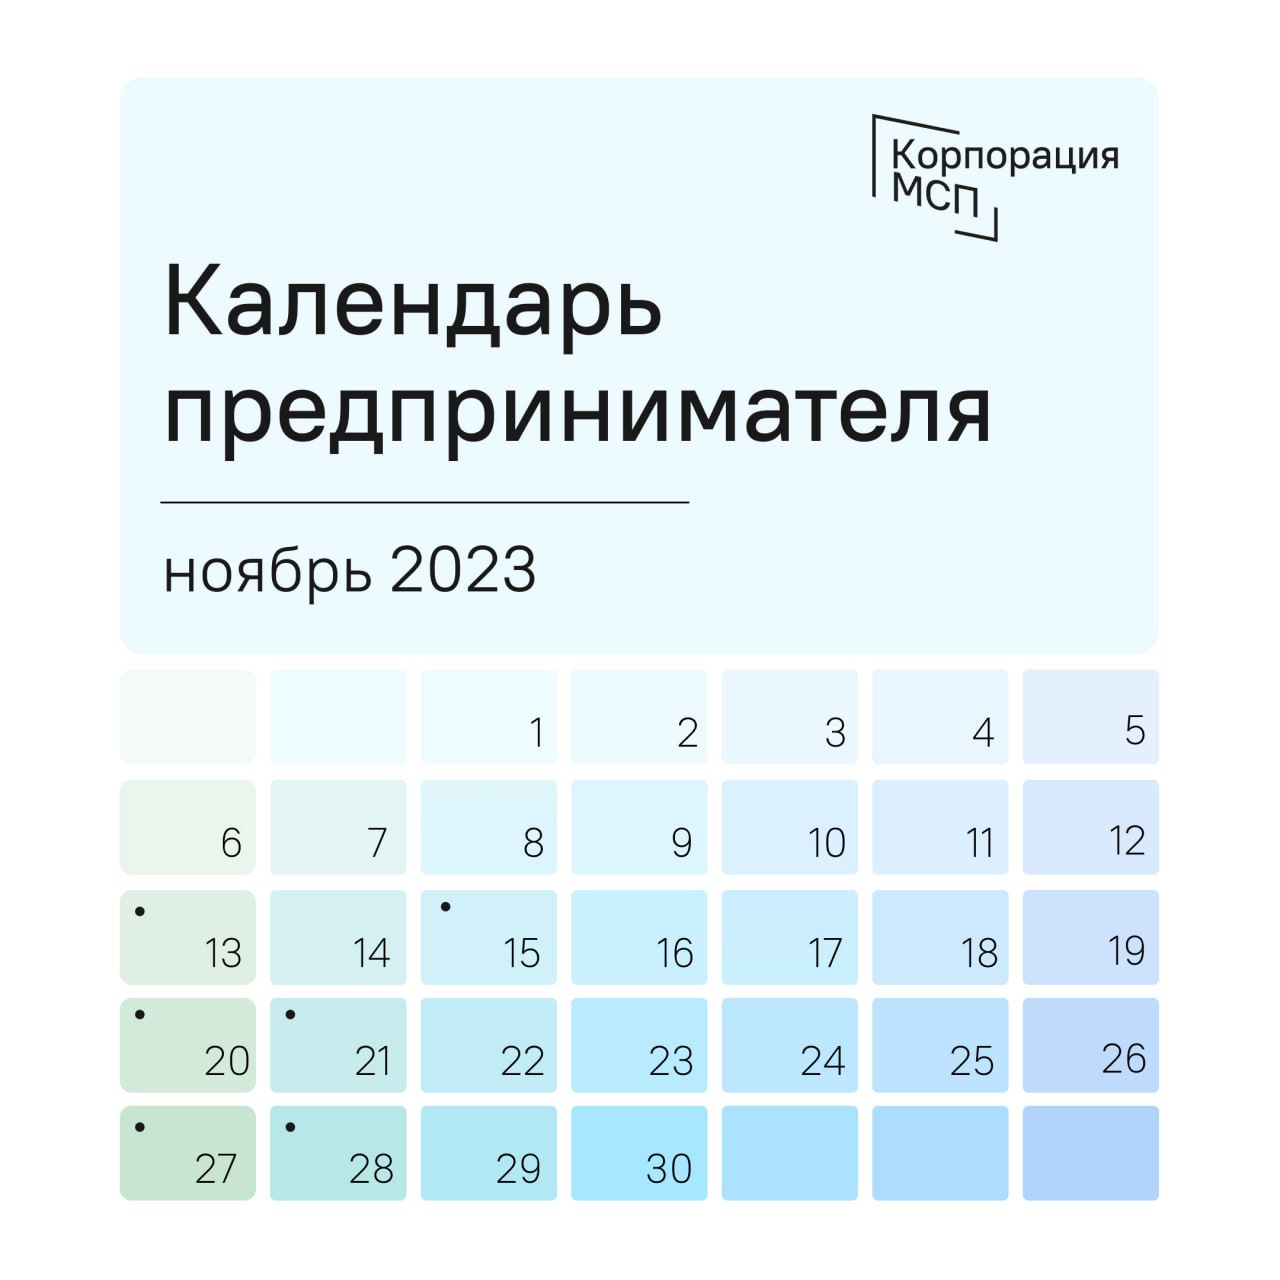 Календарь предпринимателя на ноябрь 2023 года.